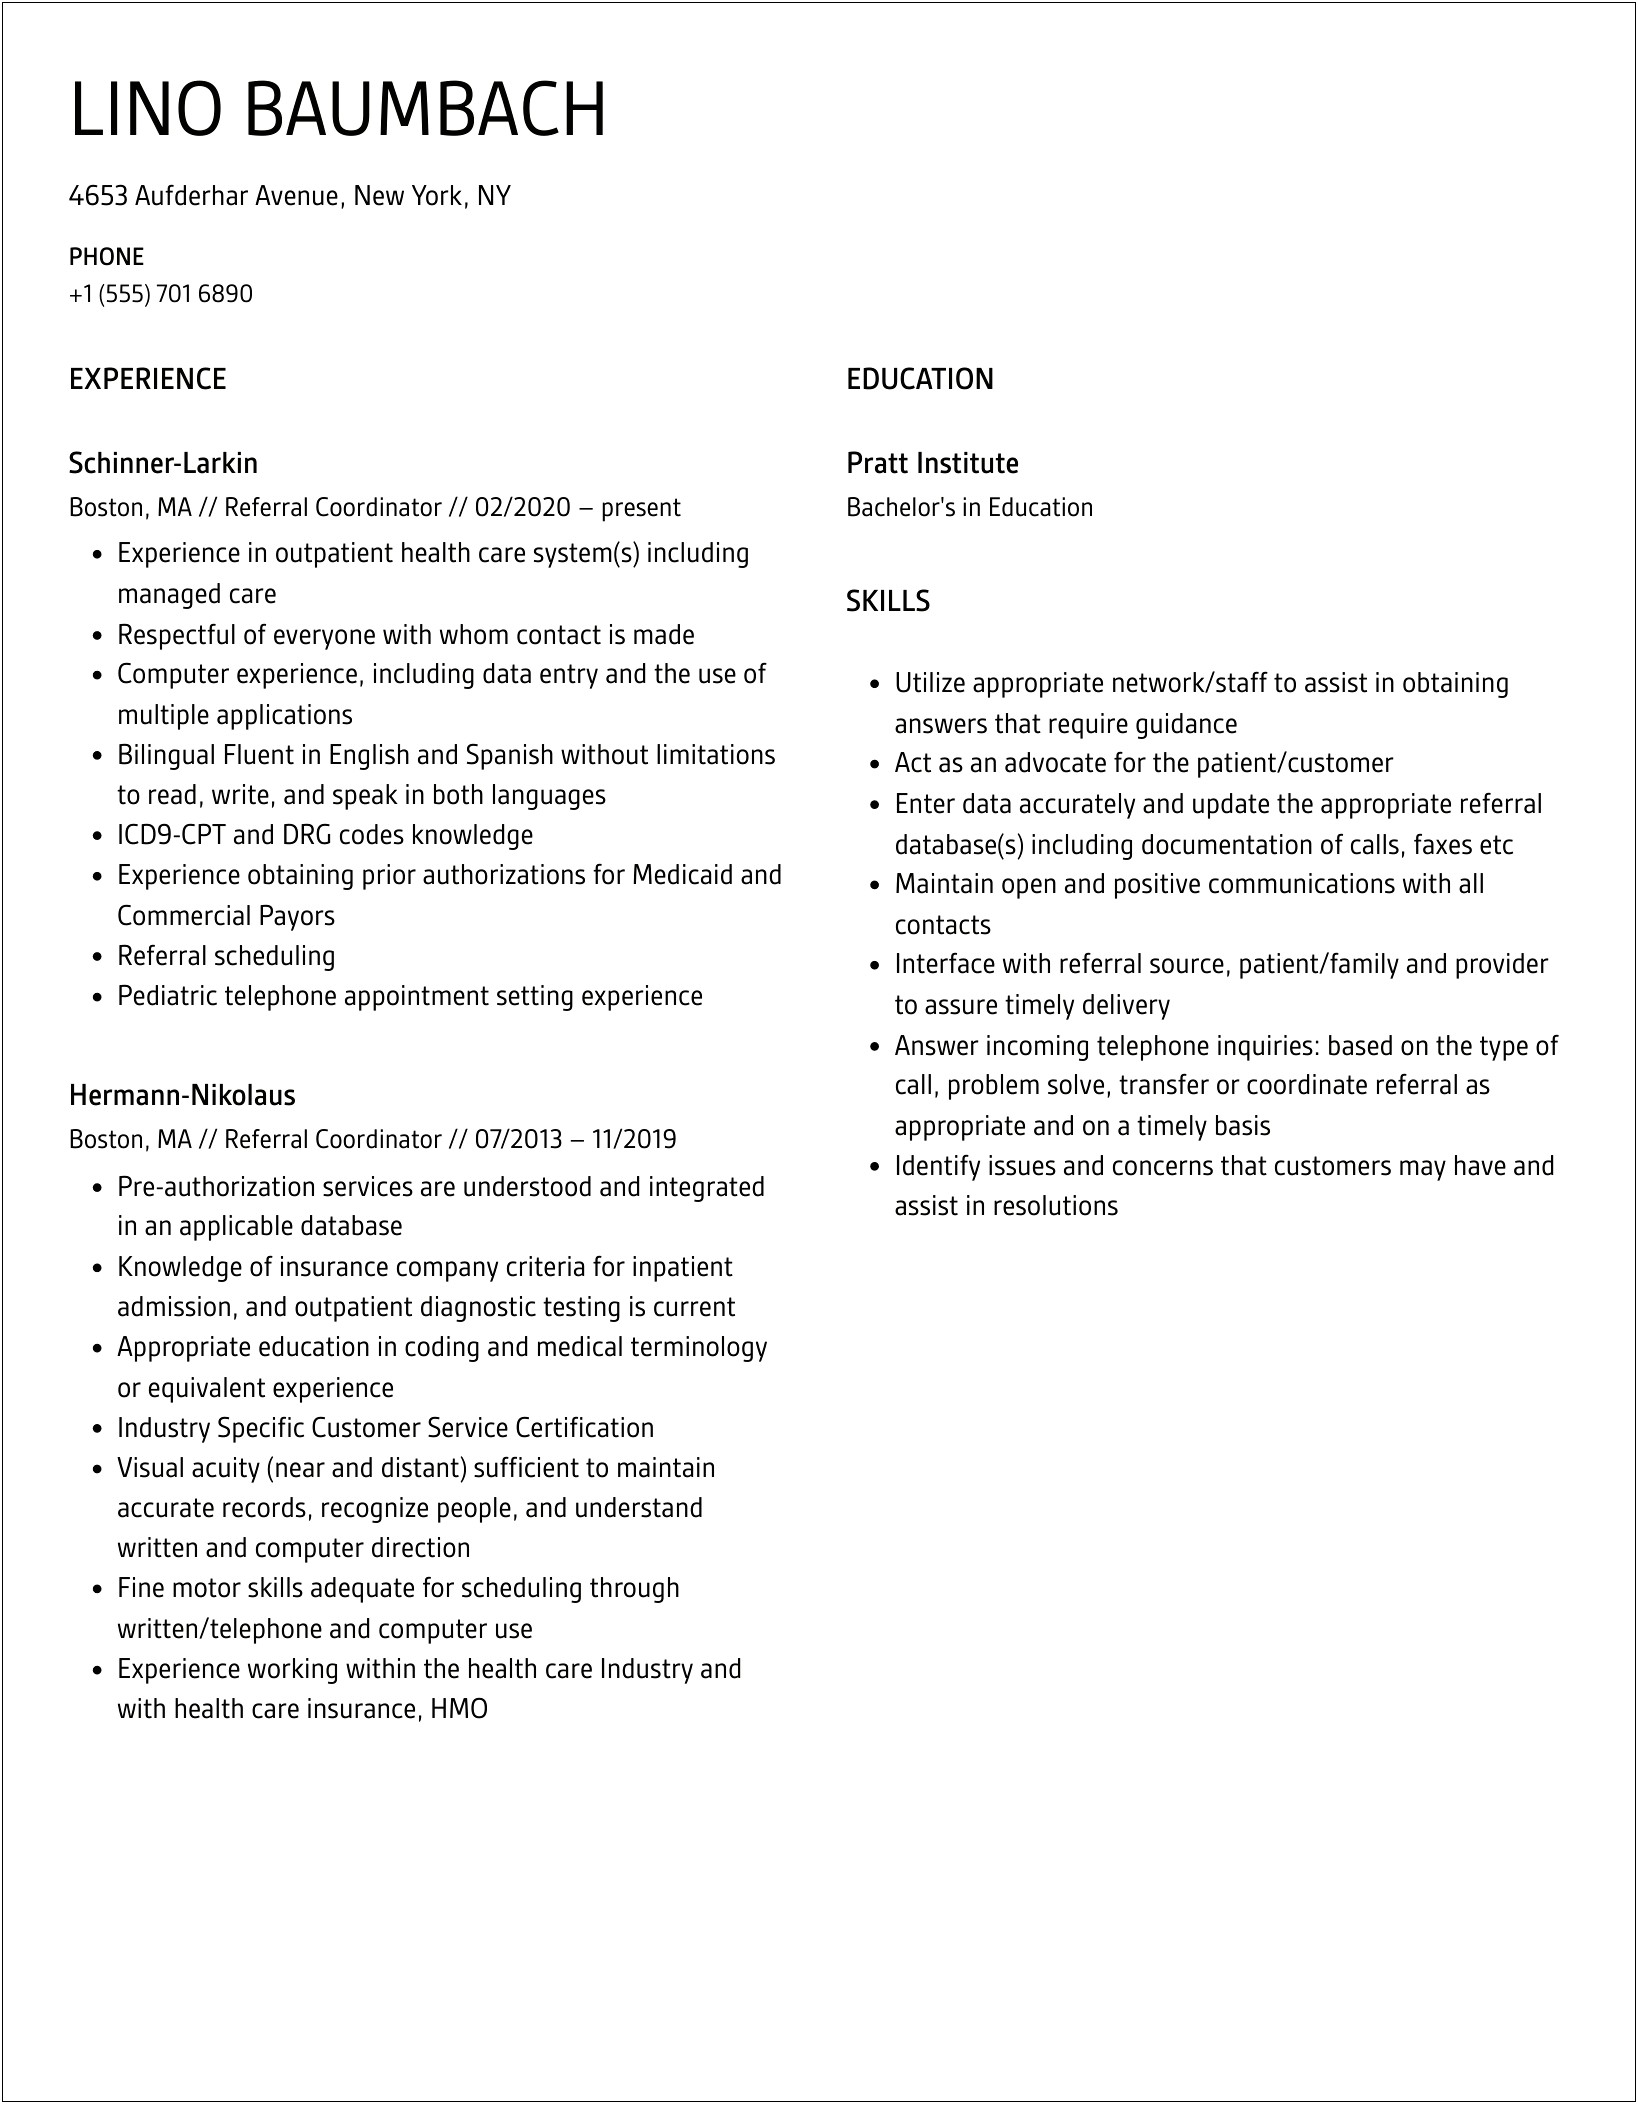 Sample Resume For Medical Referral Coordinator